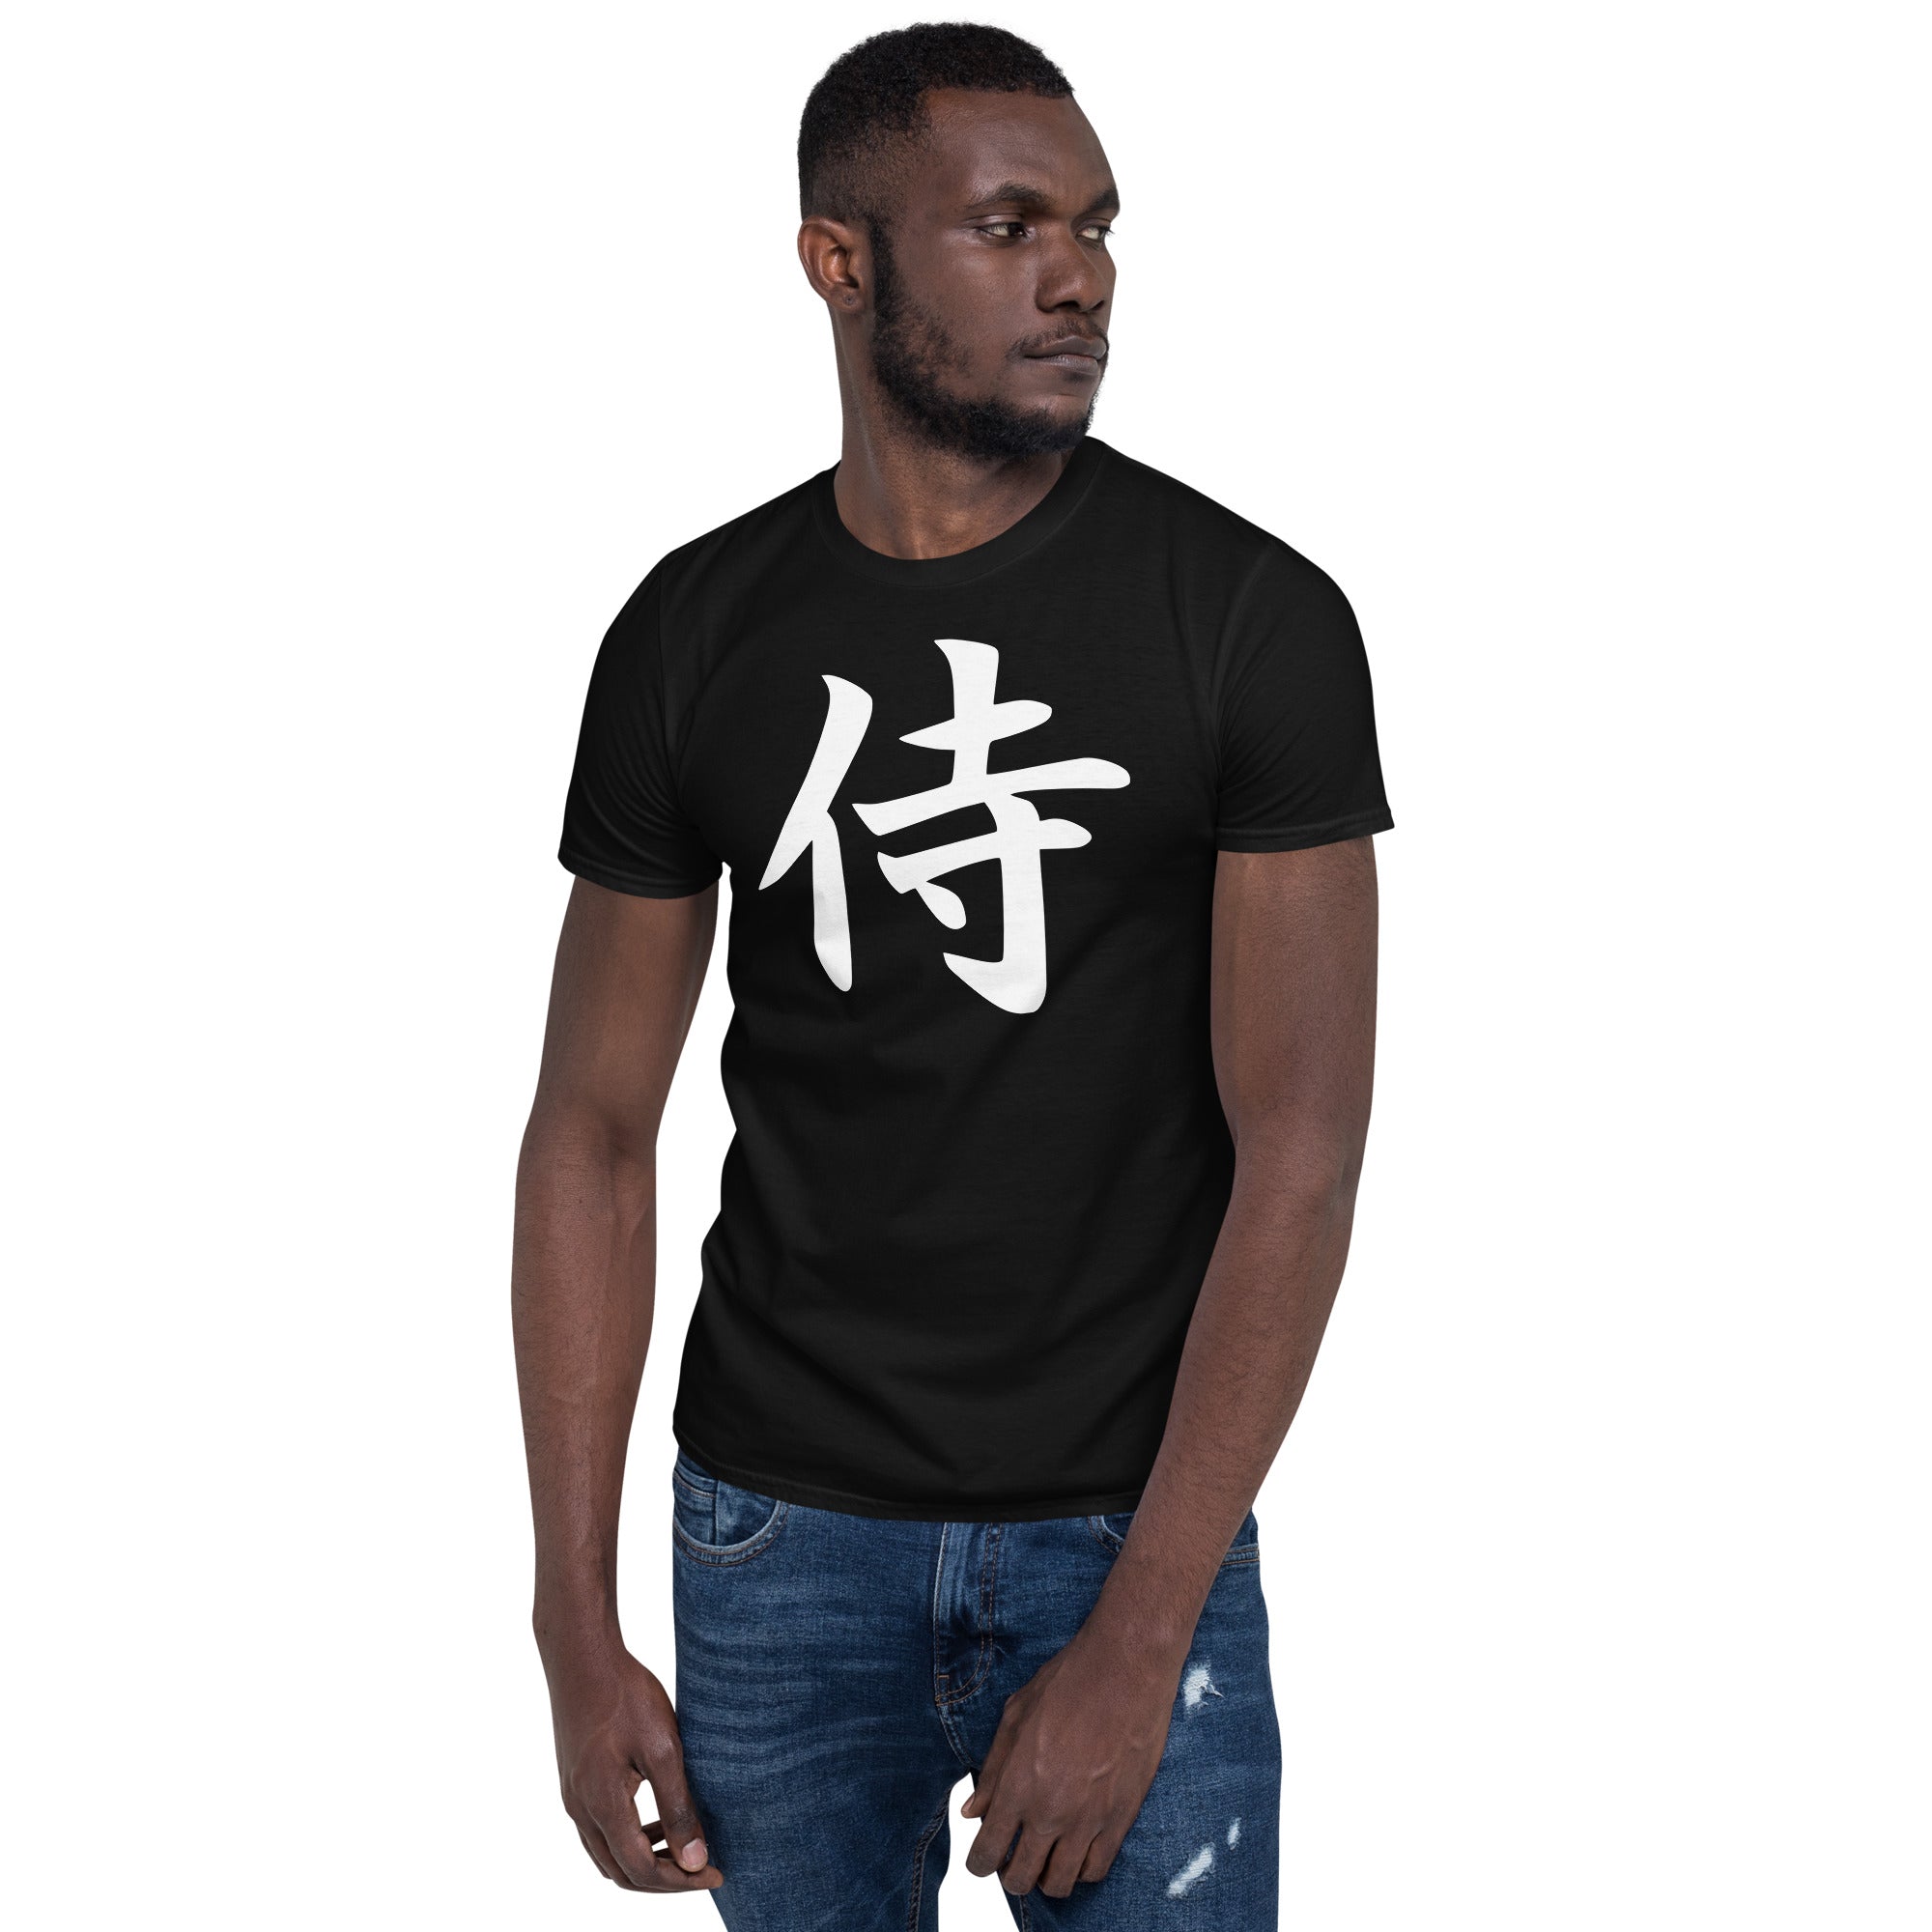 White Samurai The Japanese Kanji Symbol Men's Short-Sleeve T-Shirt - Edge of Life Designs